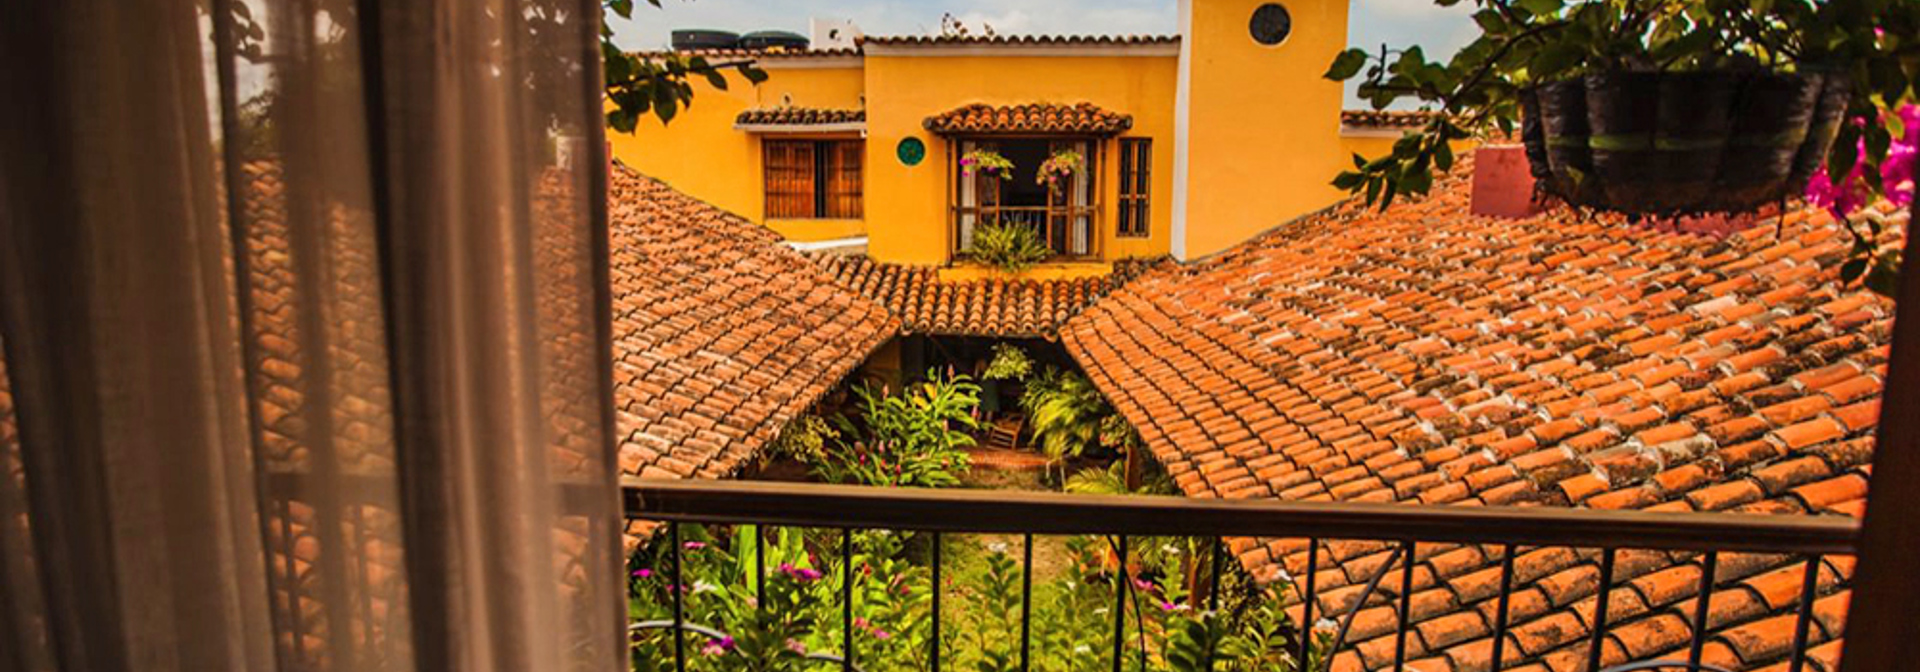 colombia - la casa amarilla_villa_02